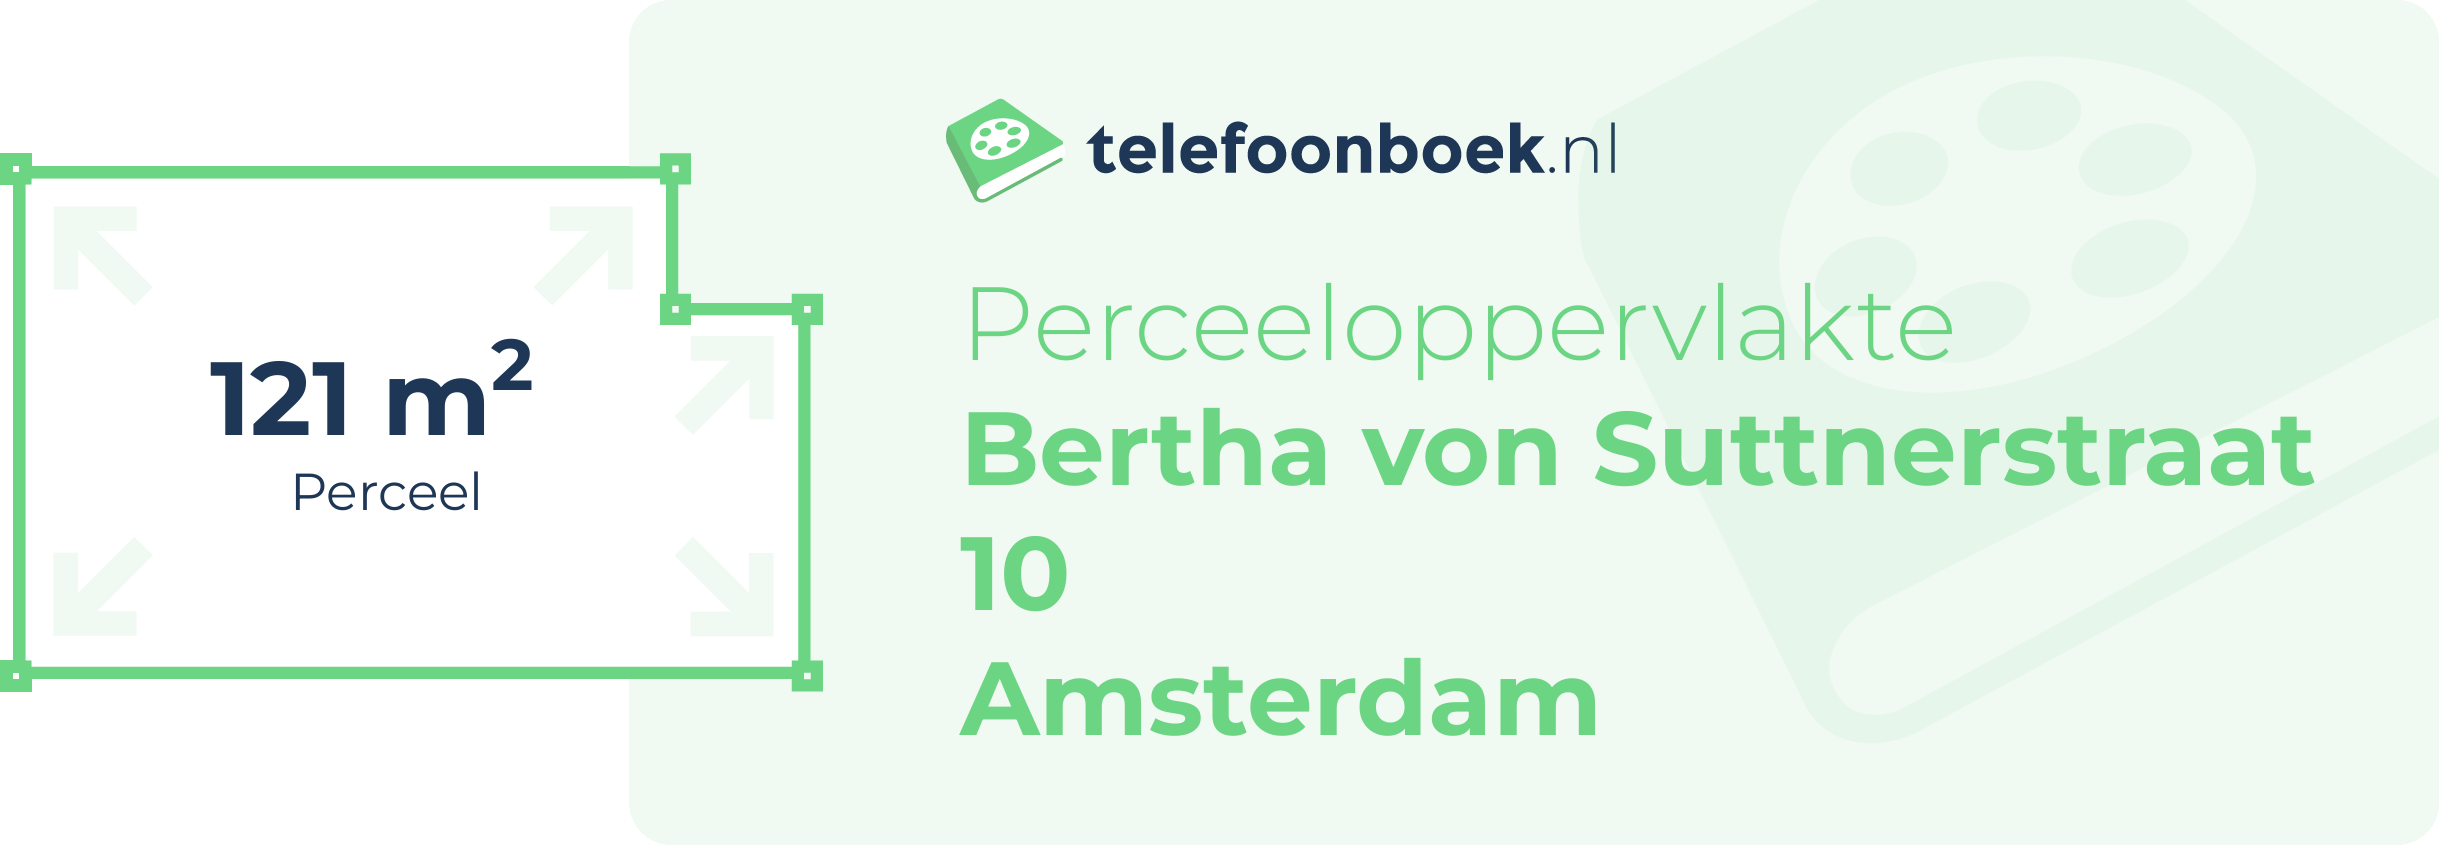 Perceeloppervlakte Bertha Von Suttnerstraat 10 Amsterdam